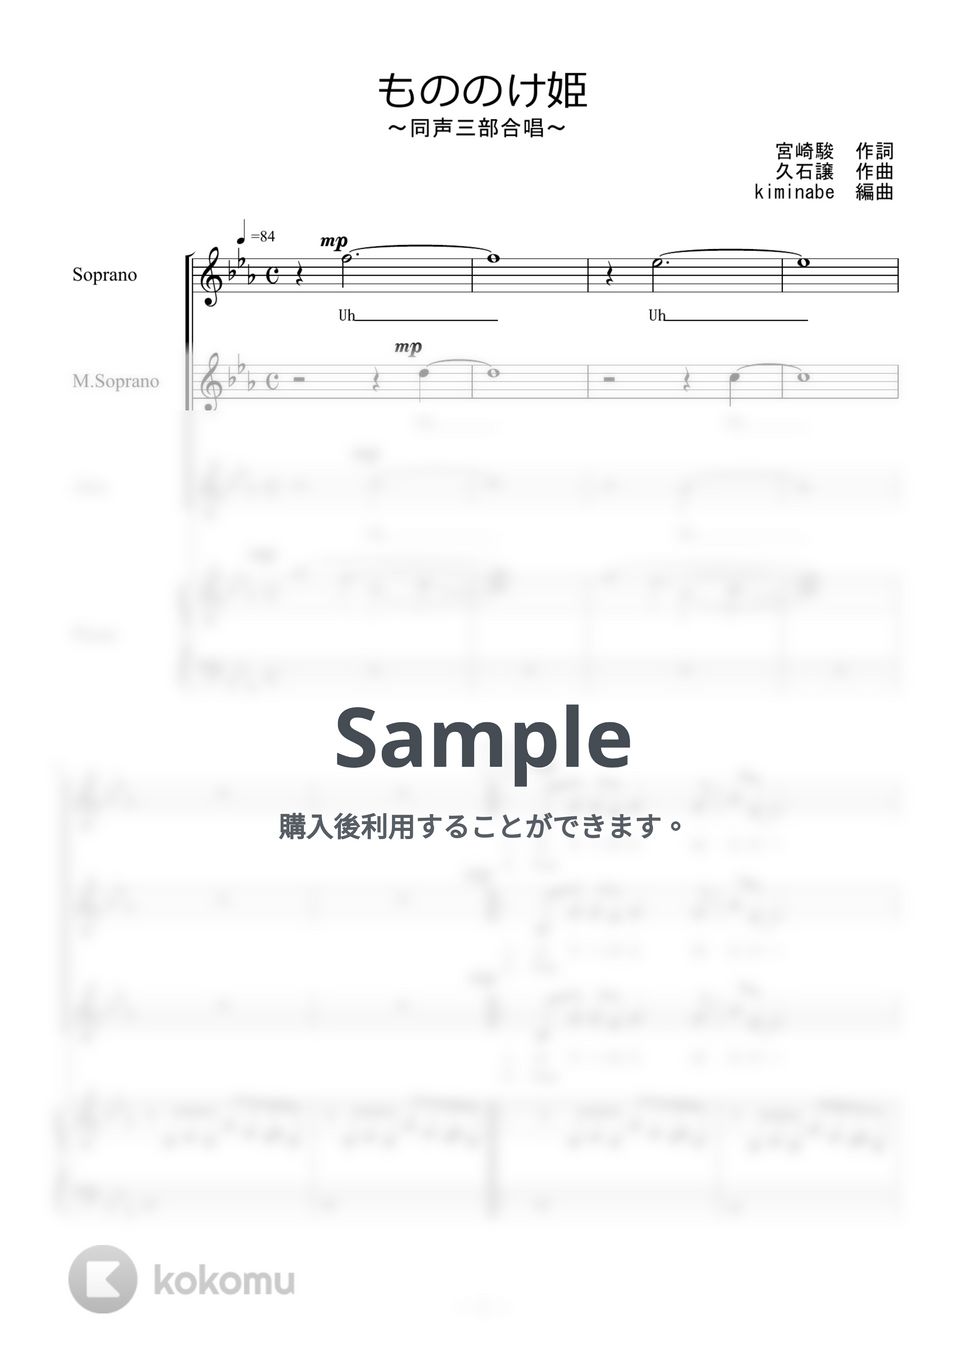 久石譲 - もののけ姫 (同声三部合唱) by kiminabe